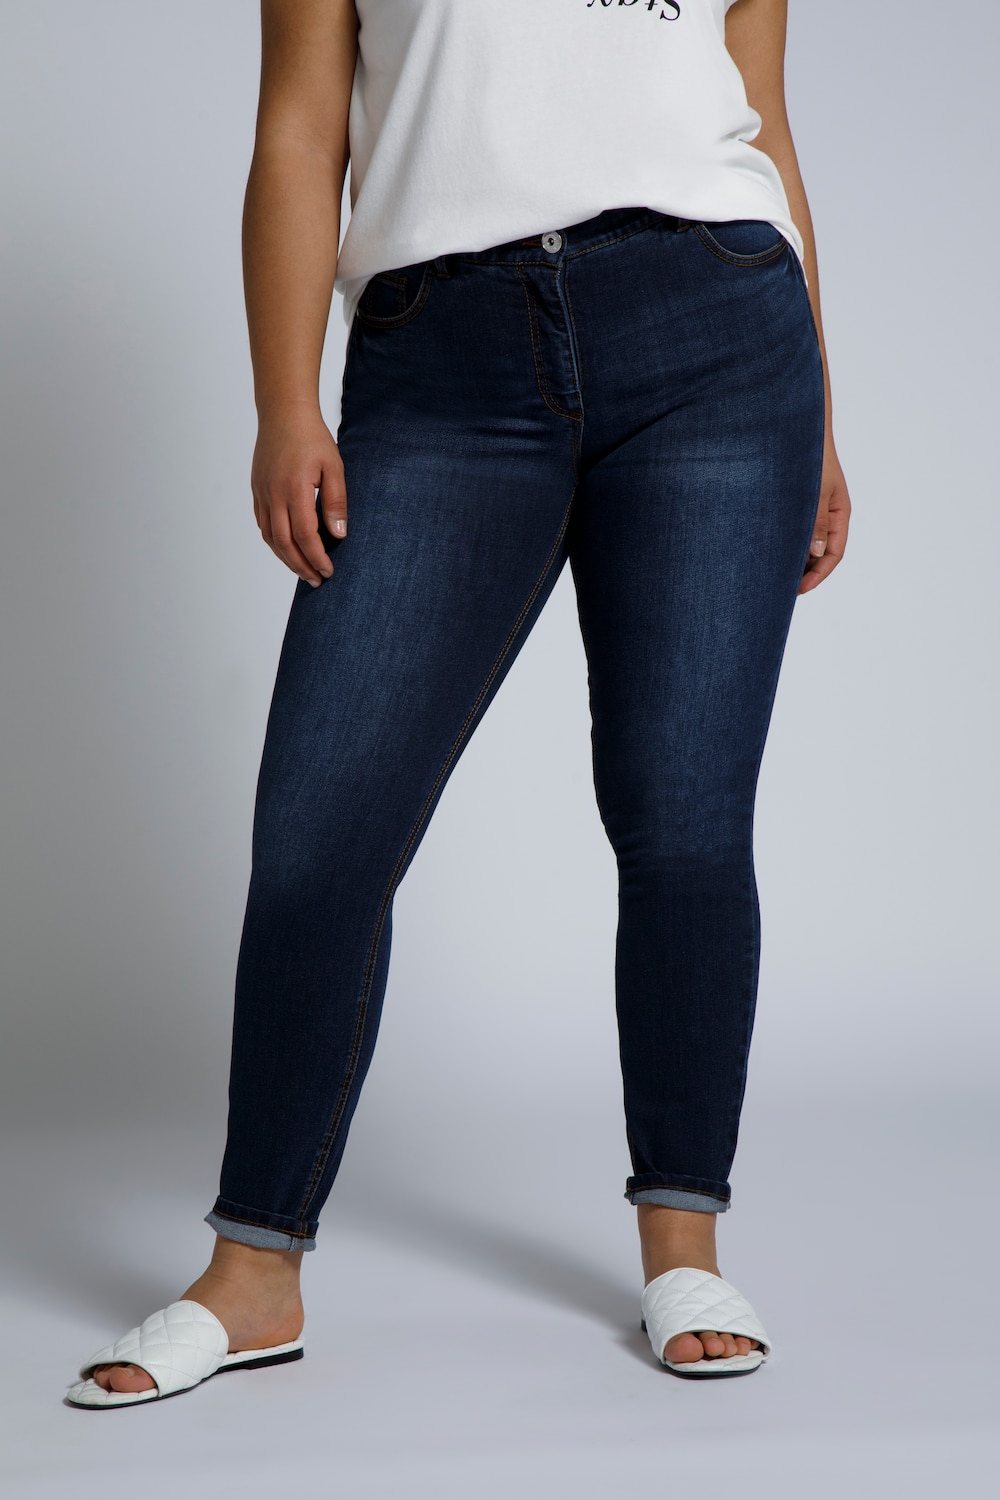 Grote Maten skinny jeans, Dames, blauw, Maat: 52, Katoen, Studio Untold